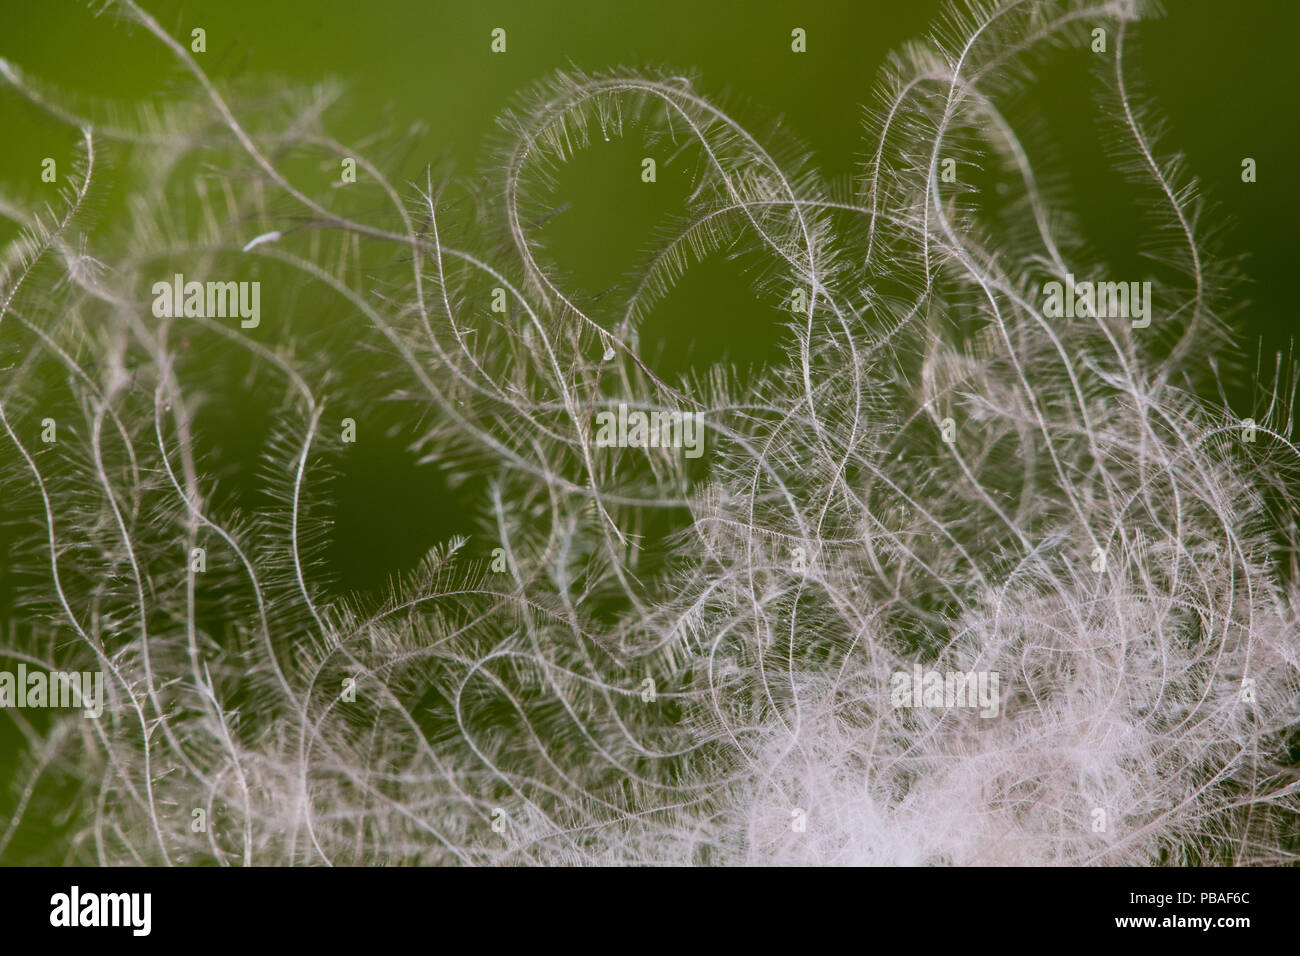 Gemeinsame Eiderente (Somateria Mollissima) Nahaufnahme von daunenfedern,  die Qualität der kleine Haken macht die Daunendecke der beste Isolator,  Vega Archipel, Norwegen Juni Stockfotografie - Alamy